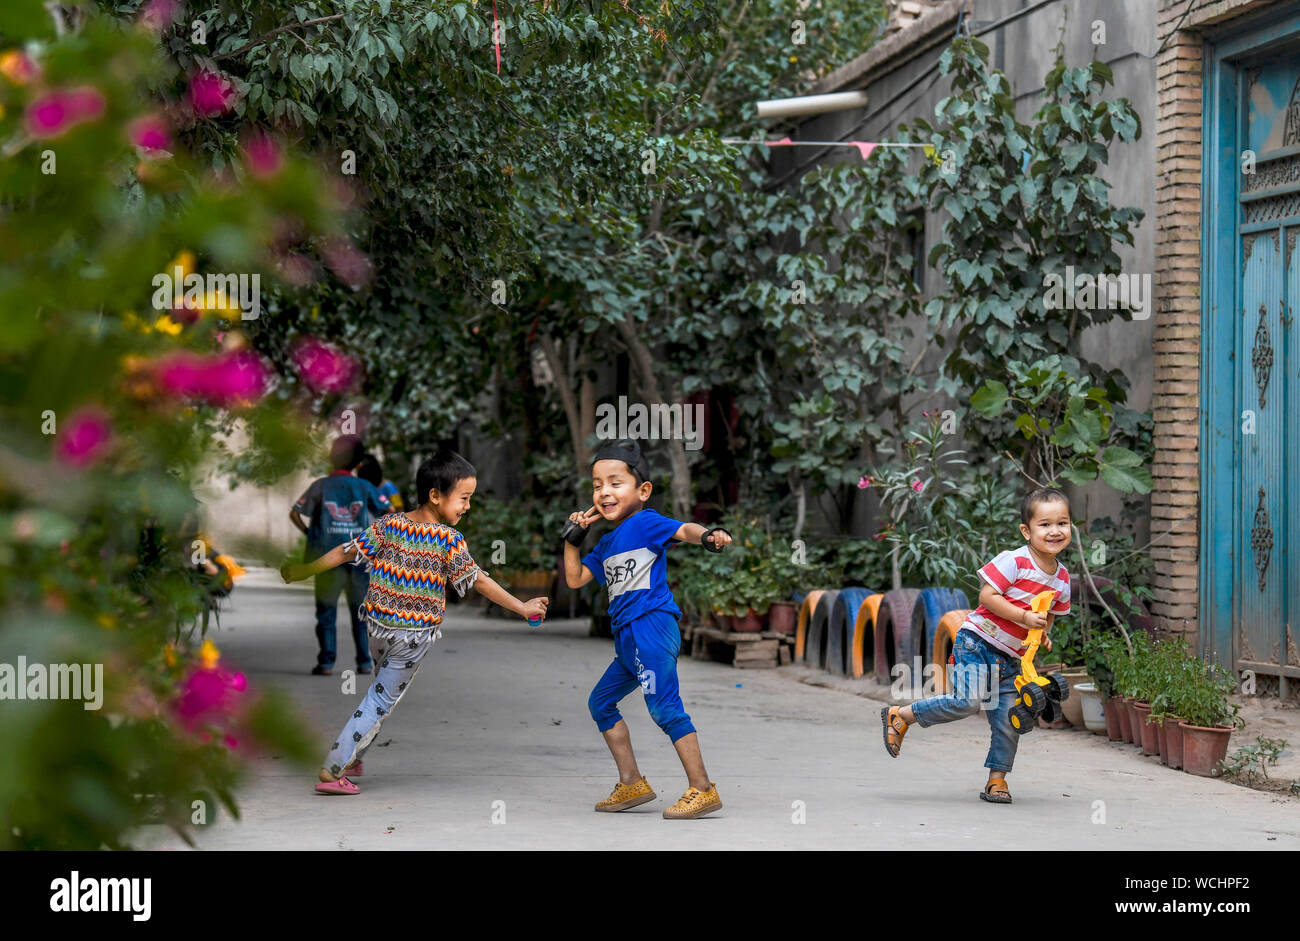 (190828) -- KASHGAR, Agosto 28, 2019 (Xinhua) -- i bambini si divertono in un vicolo a Qianjin Village a Kashgar, a nord-ovest della Cina di Xinjiang Uygur Regione autonoma, Agosto 18, 2019. Abitazioni circondato da fragranti sbocciano i fiori a profusione e ben disposte le case e i vicoli di un aspetto più ordinato, varie rivestimento alberi lungo le strade dove i bambini si divertono, la scena pastorale può essere visto ovunque nel villaggio di Qianjin. La bellezza idilliaca nel villaggio di Qianjin deriva dalla sua fiorente economia di fiori in cui Salima Sultan è un pioniere. Salima, un 60-anno-vecchio abitante, sviluppato la predilezione di f Foto Stock